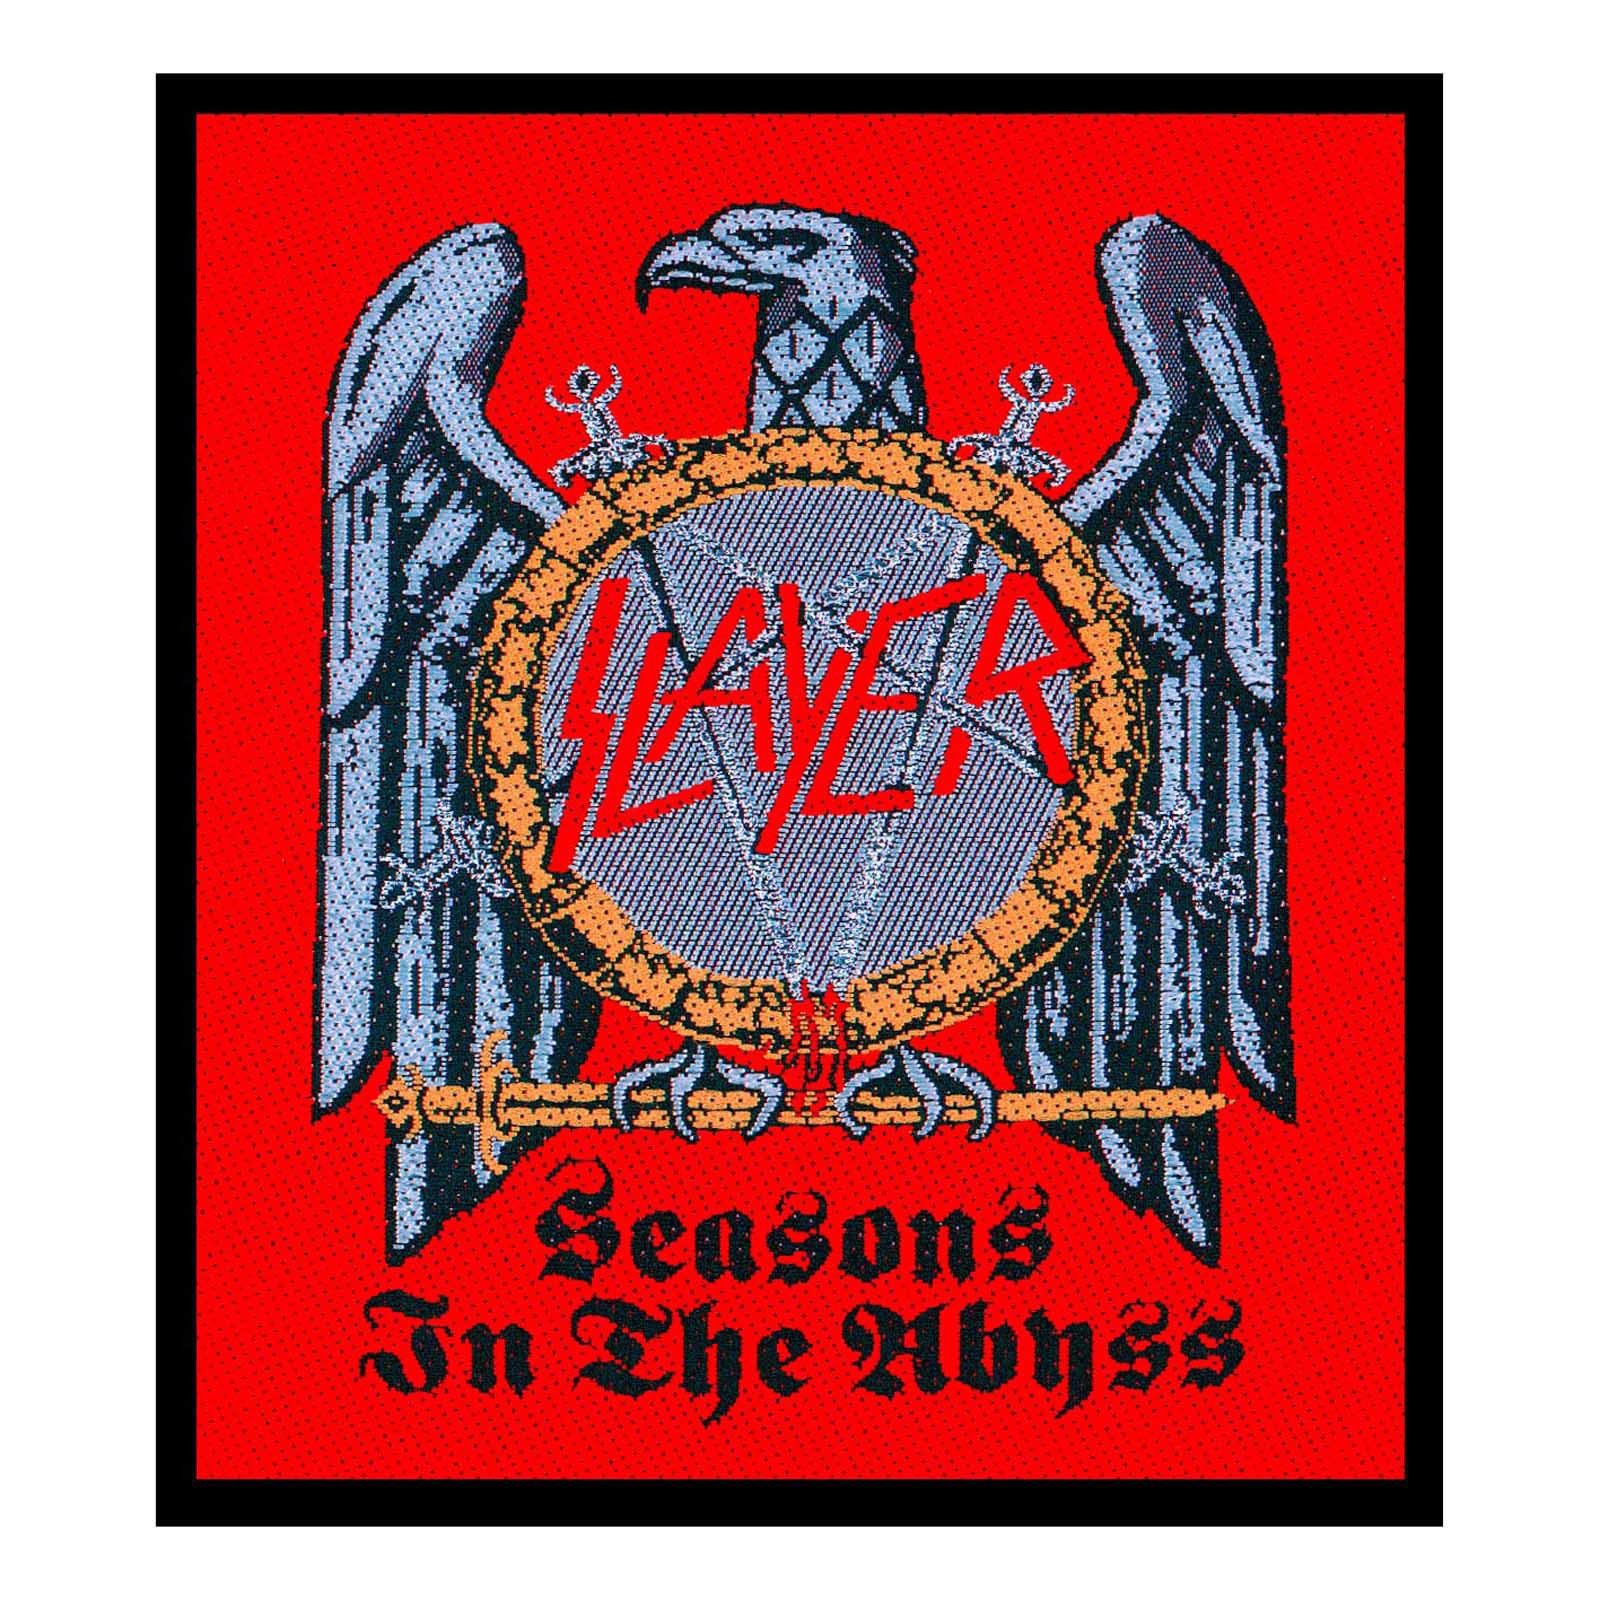 (XC[) Slayer ItBVi Seasons In The Abyss by pb` yCOʔ́z